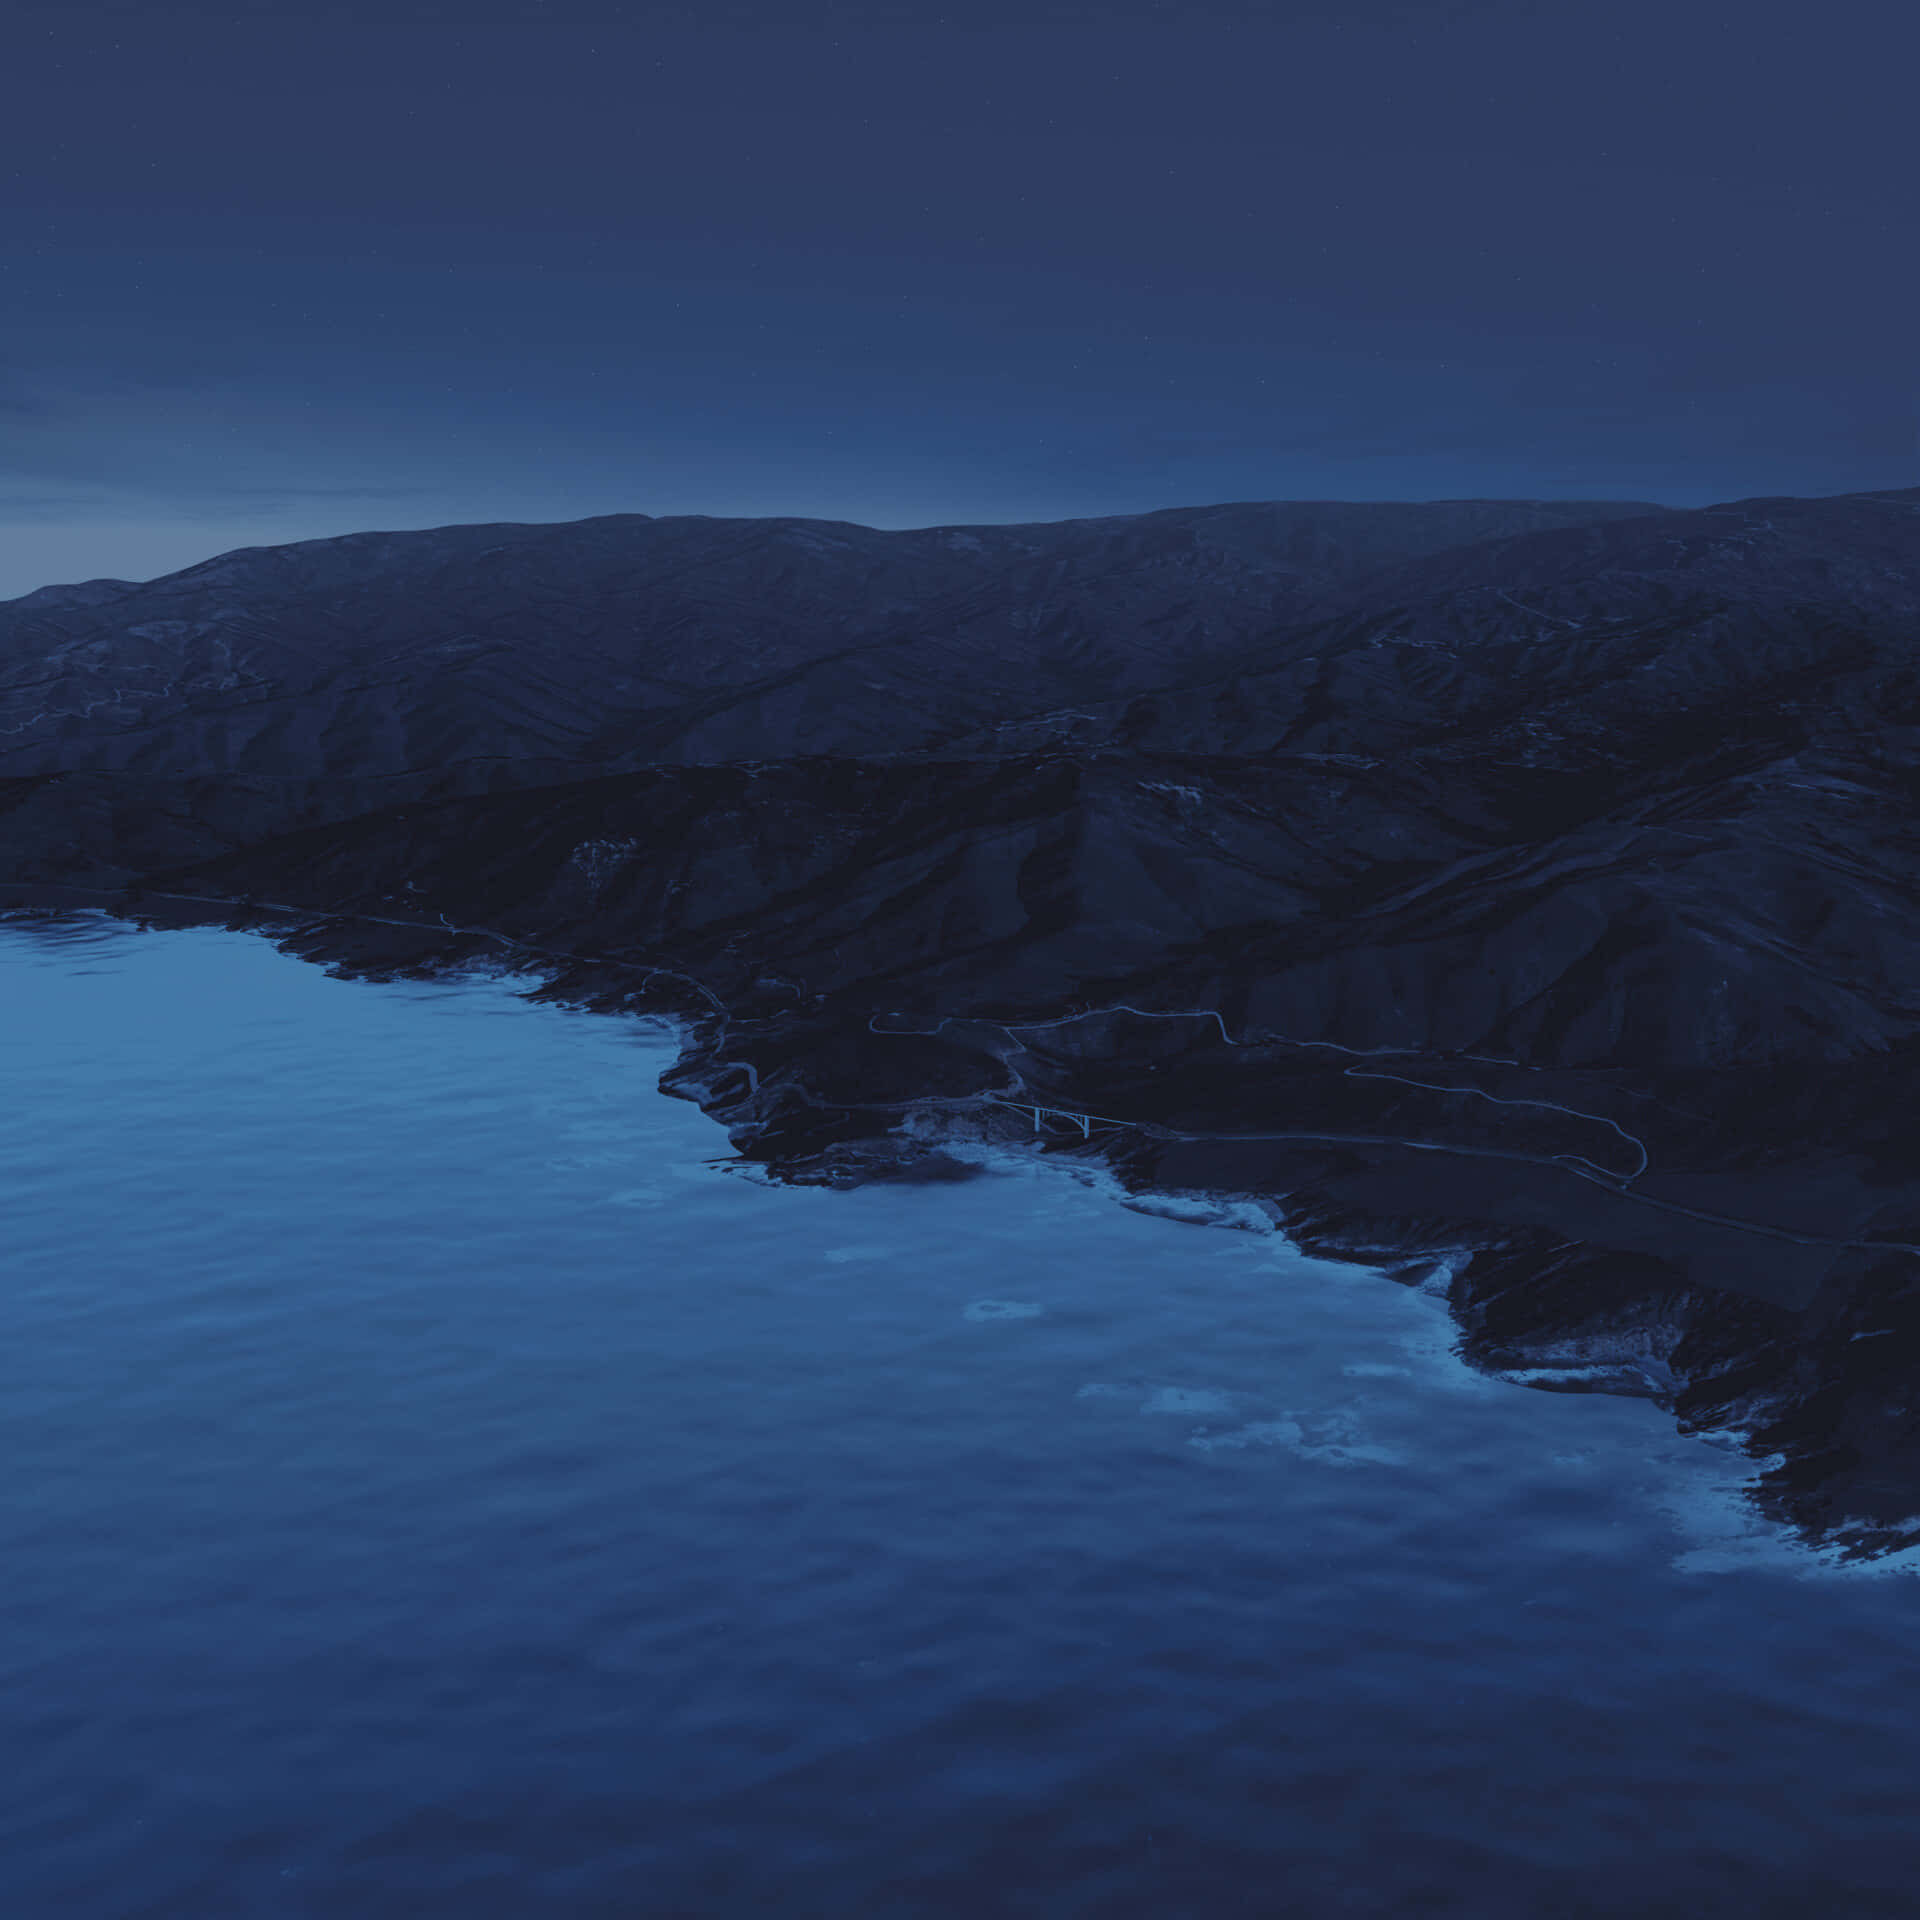 Stunning macOS Big Sur Landscape Background